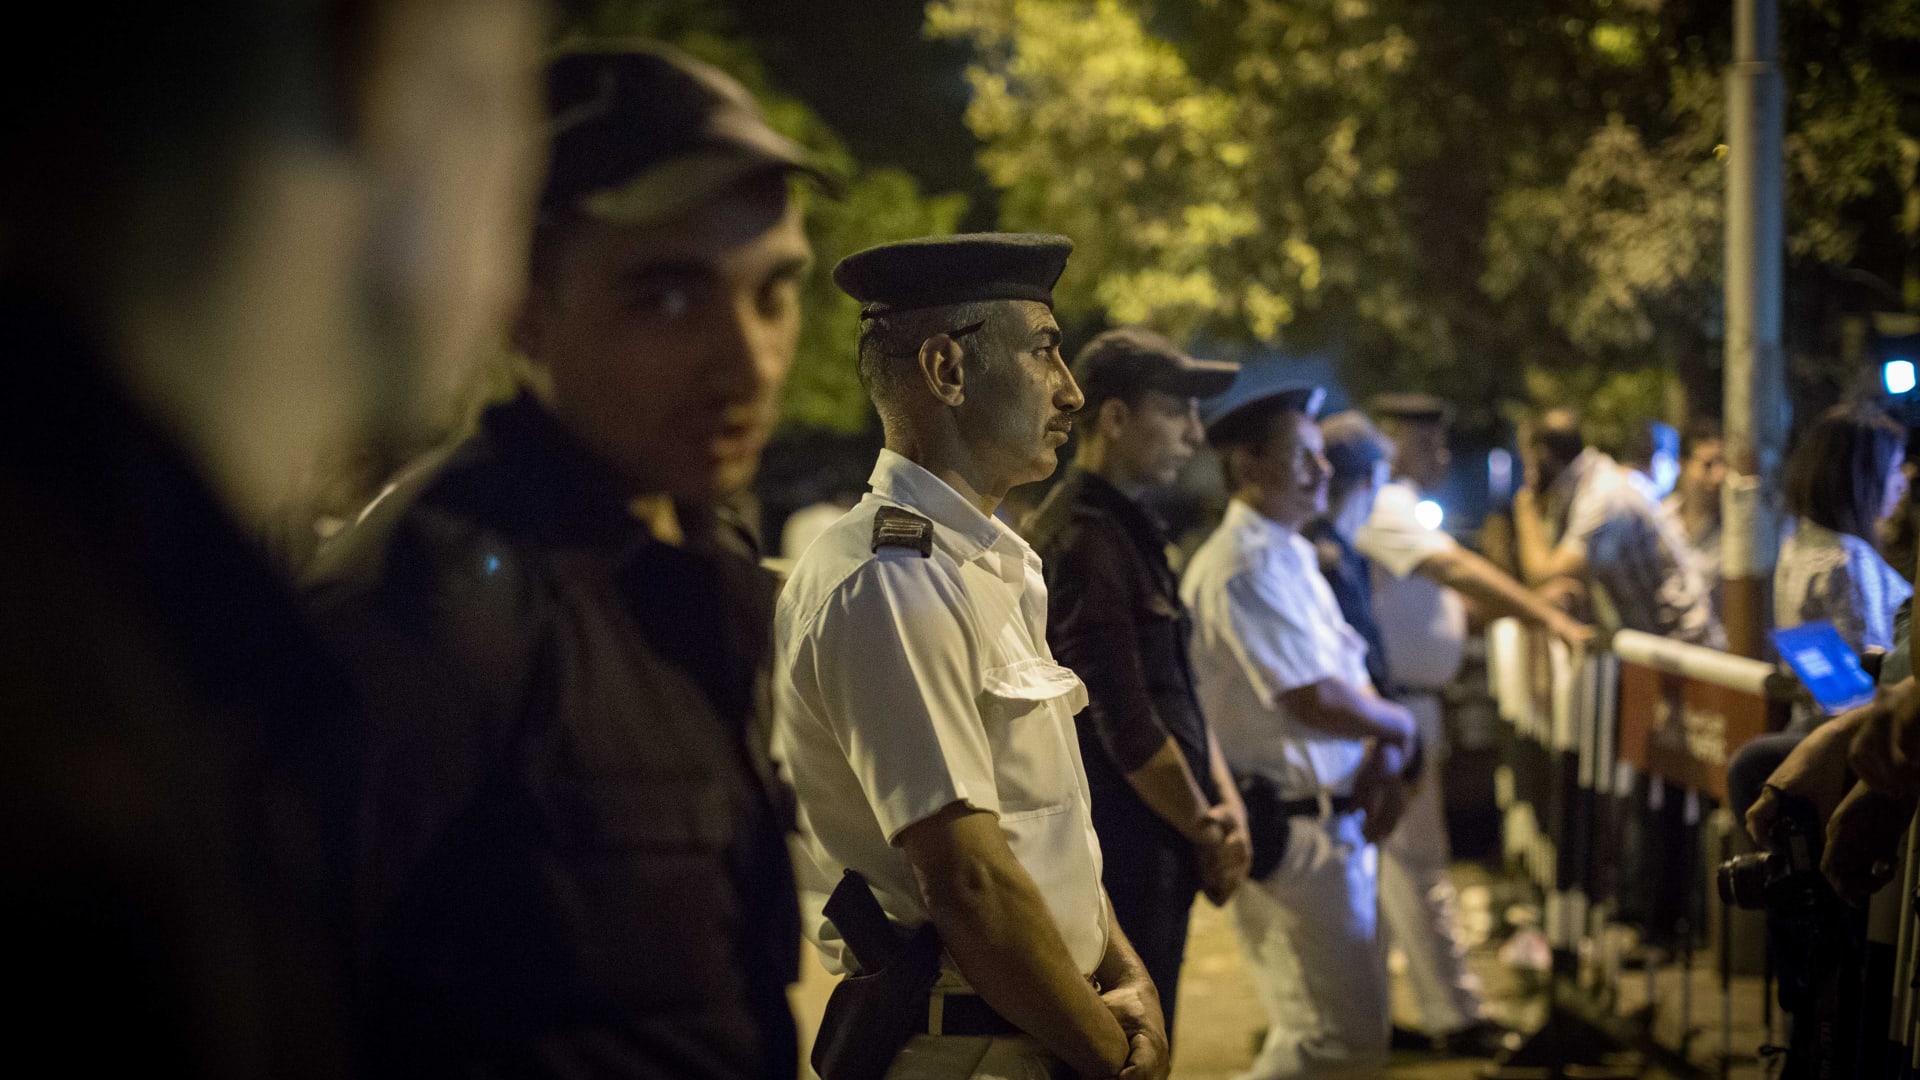 داعش يتبنى إطلاق النار على دورية شرطة في سيناء.. والداخلية المصرية: "مجهولون" يقتلون 5 من الشرطة